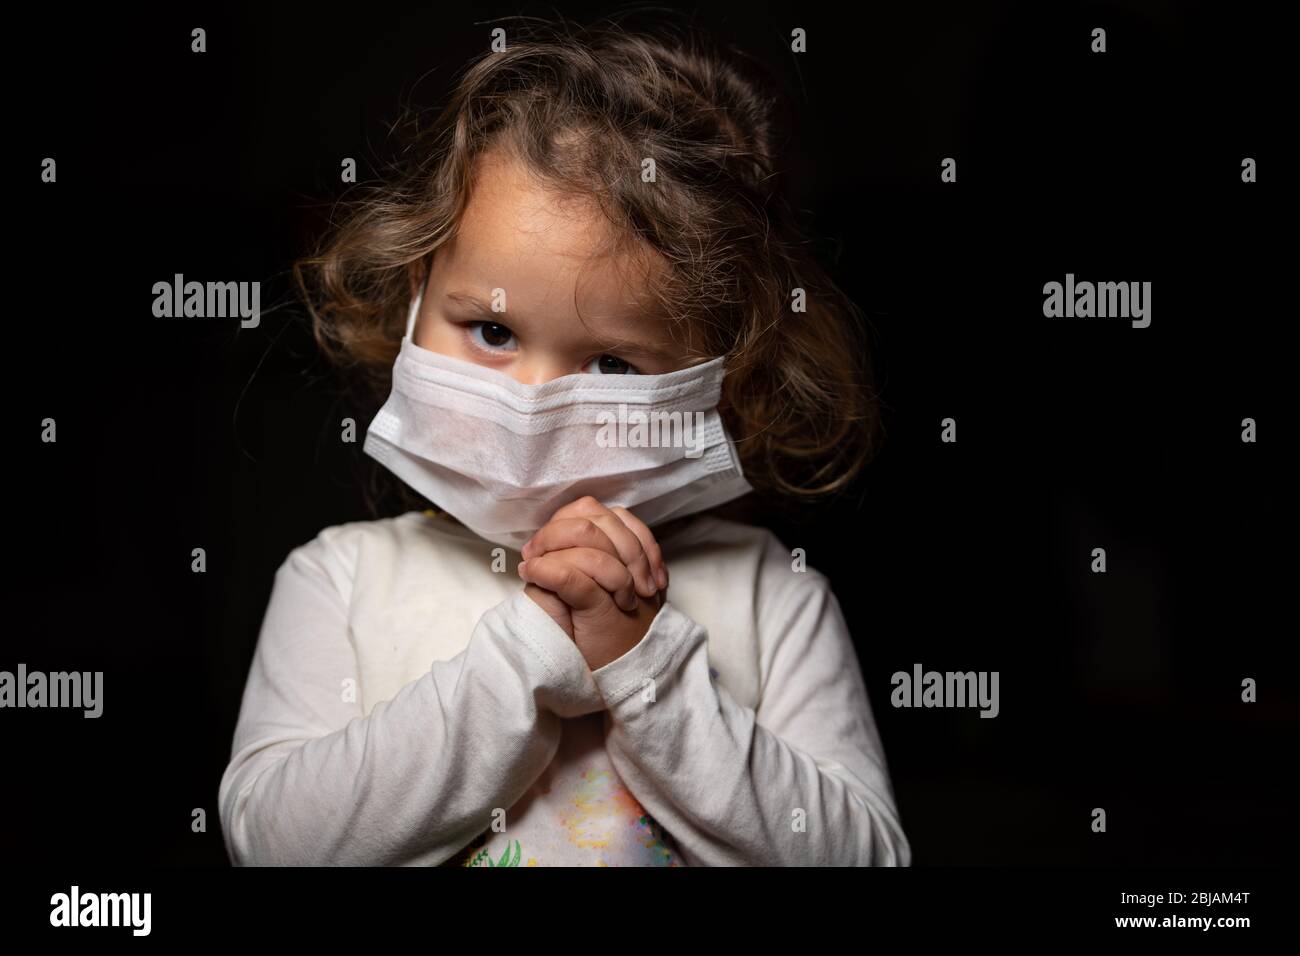 Fille portant un masque de protection contre la pandémie de coronavirus de Covid-19. Elle prie Dieu pour un traitement et de l'aide. Espace de copie. Banque D'Images